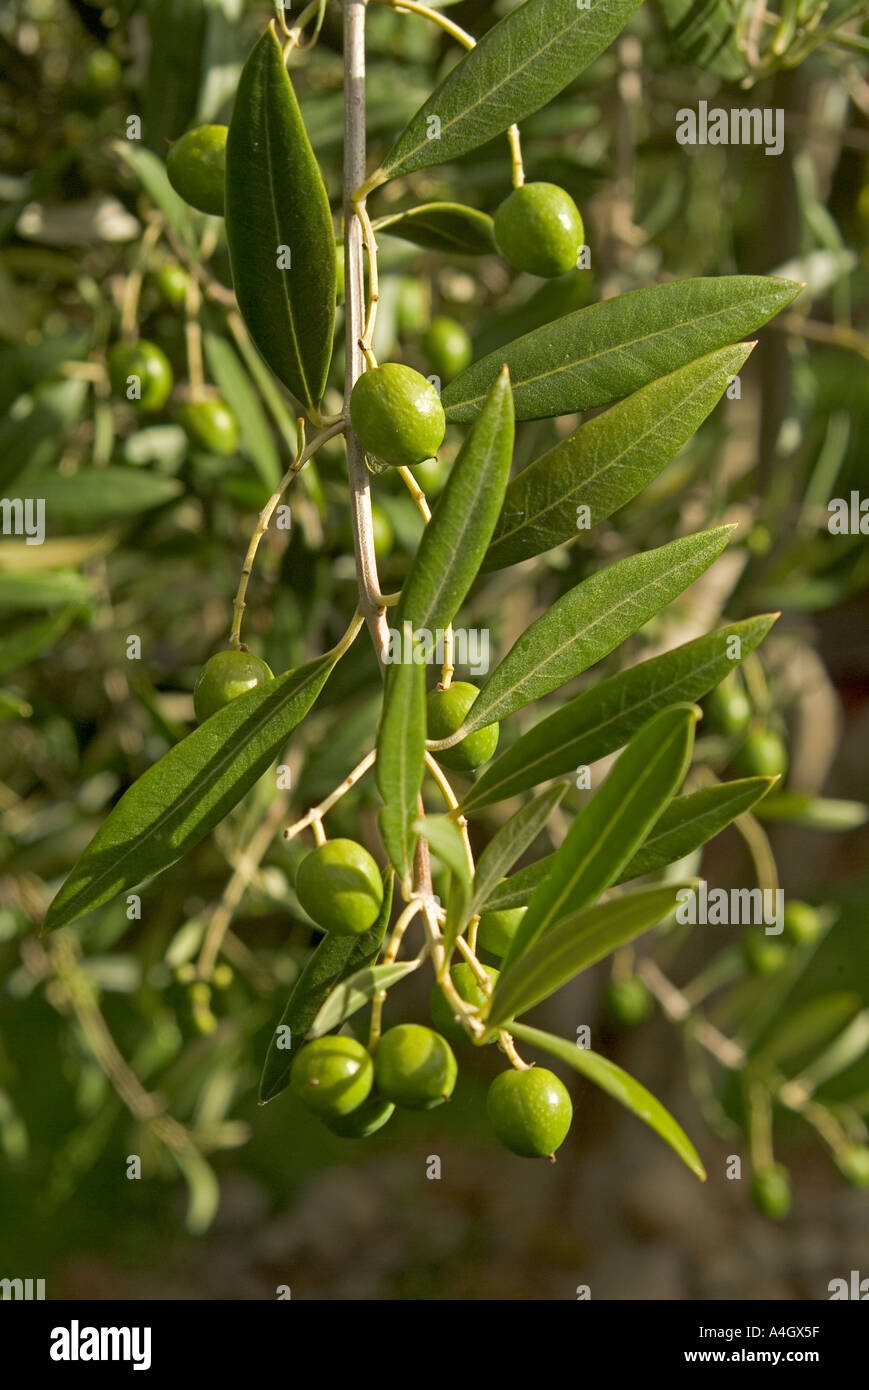 ripening olives on tree Stock Photo